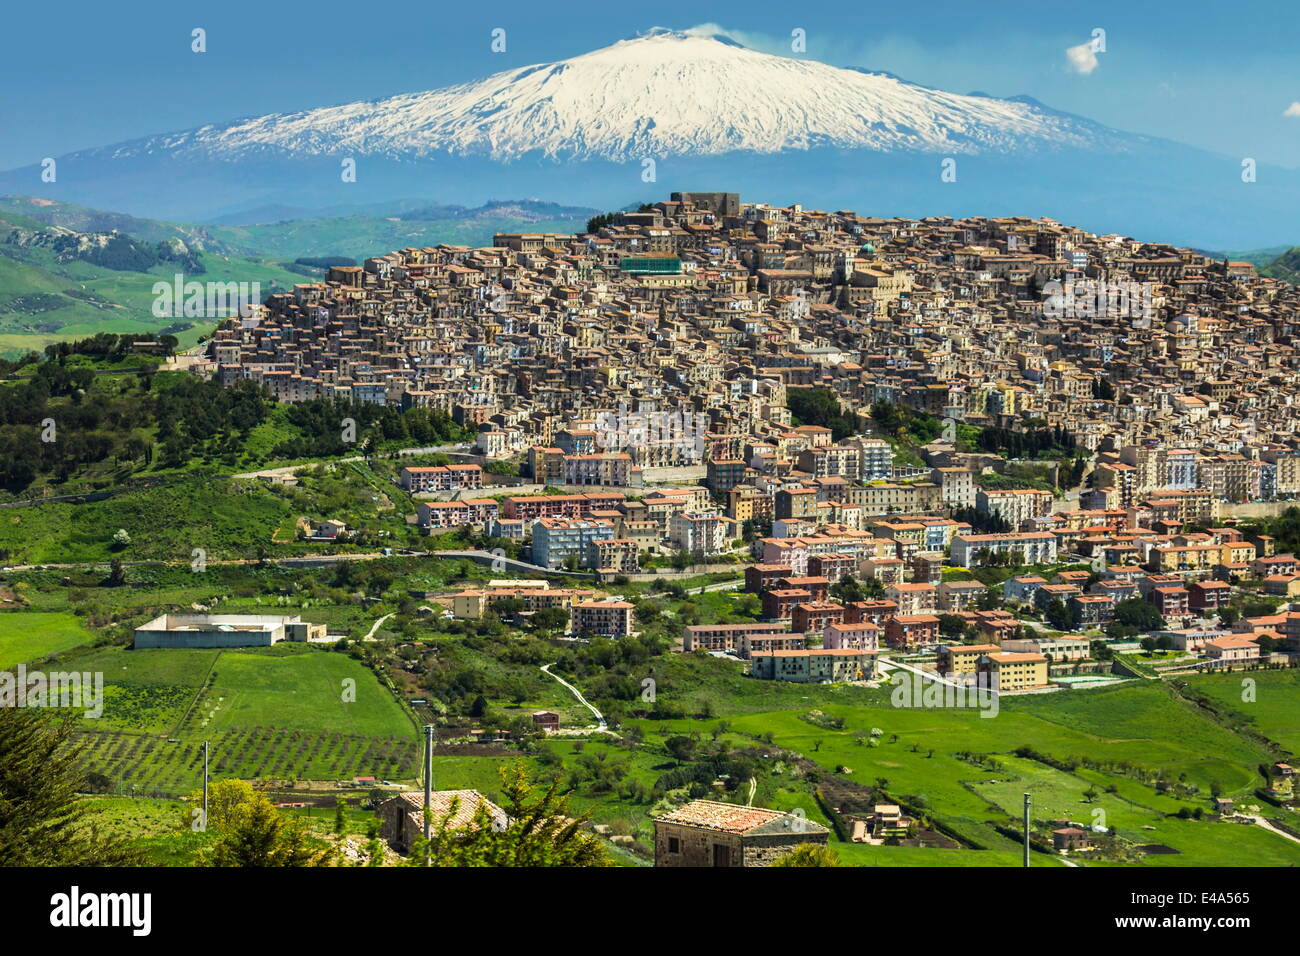 Hill town avec fond de volcan Etna enneigé, Gangi, Province de Palerme, Sicile, Italie, Méditerranée, Europe Banque D'Images